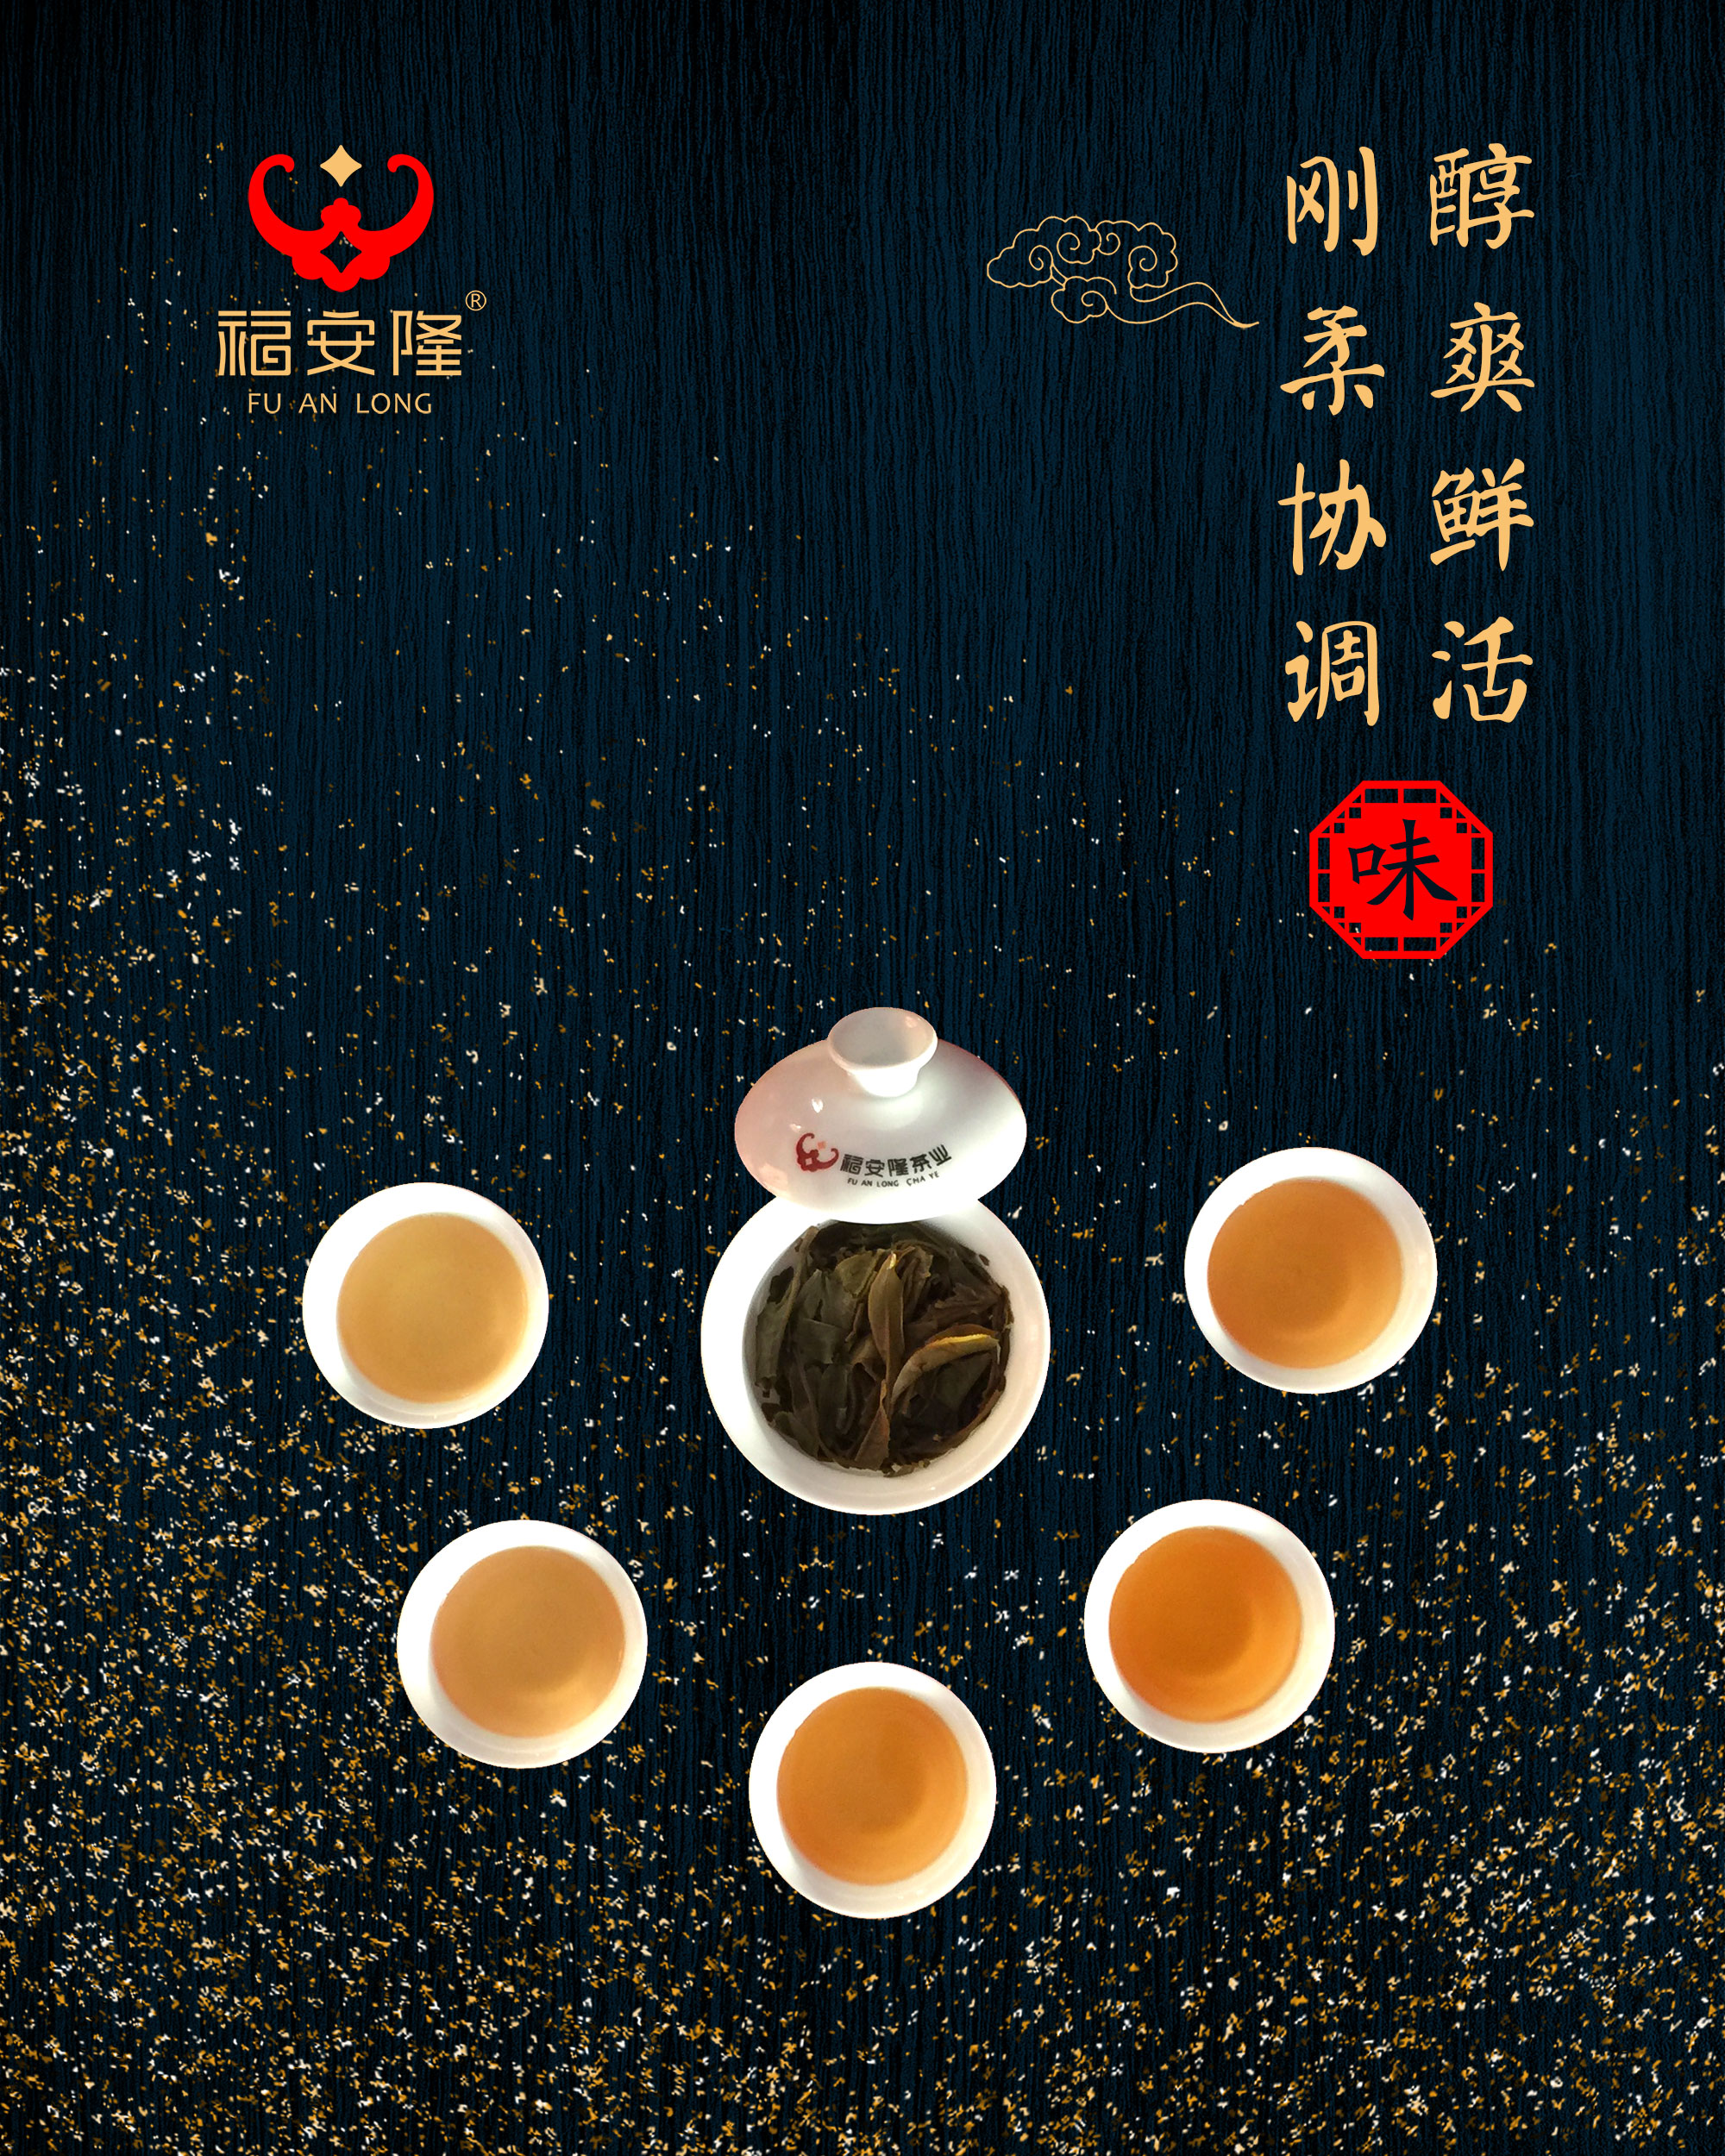 福安隆五星连缀，百福齐臻，这是今年压轴的“孔雀茶”！配图